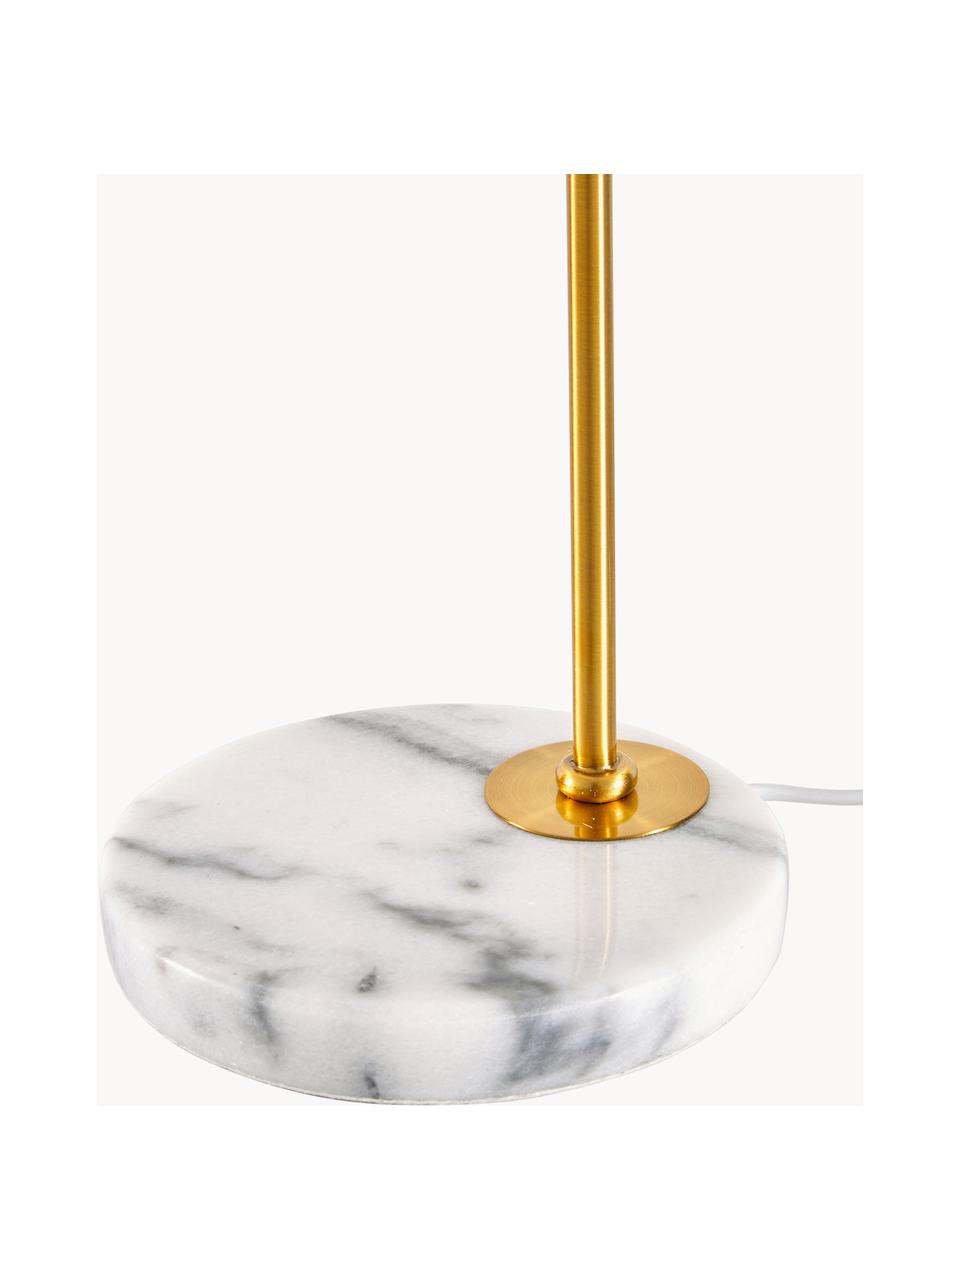 Tischlampe Montreal mit Marmorfuß, Lampenschirm: Textil, Lampenfuß: Marmor, Gestell: Metall, galvanisiert, Goldfarben, Weiß, marmoriert, B 32 x H 49 cm